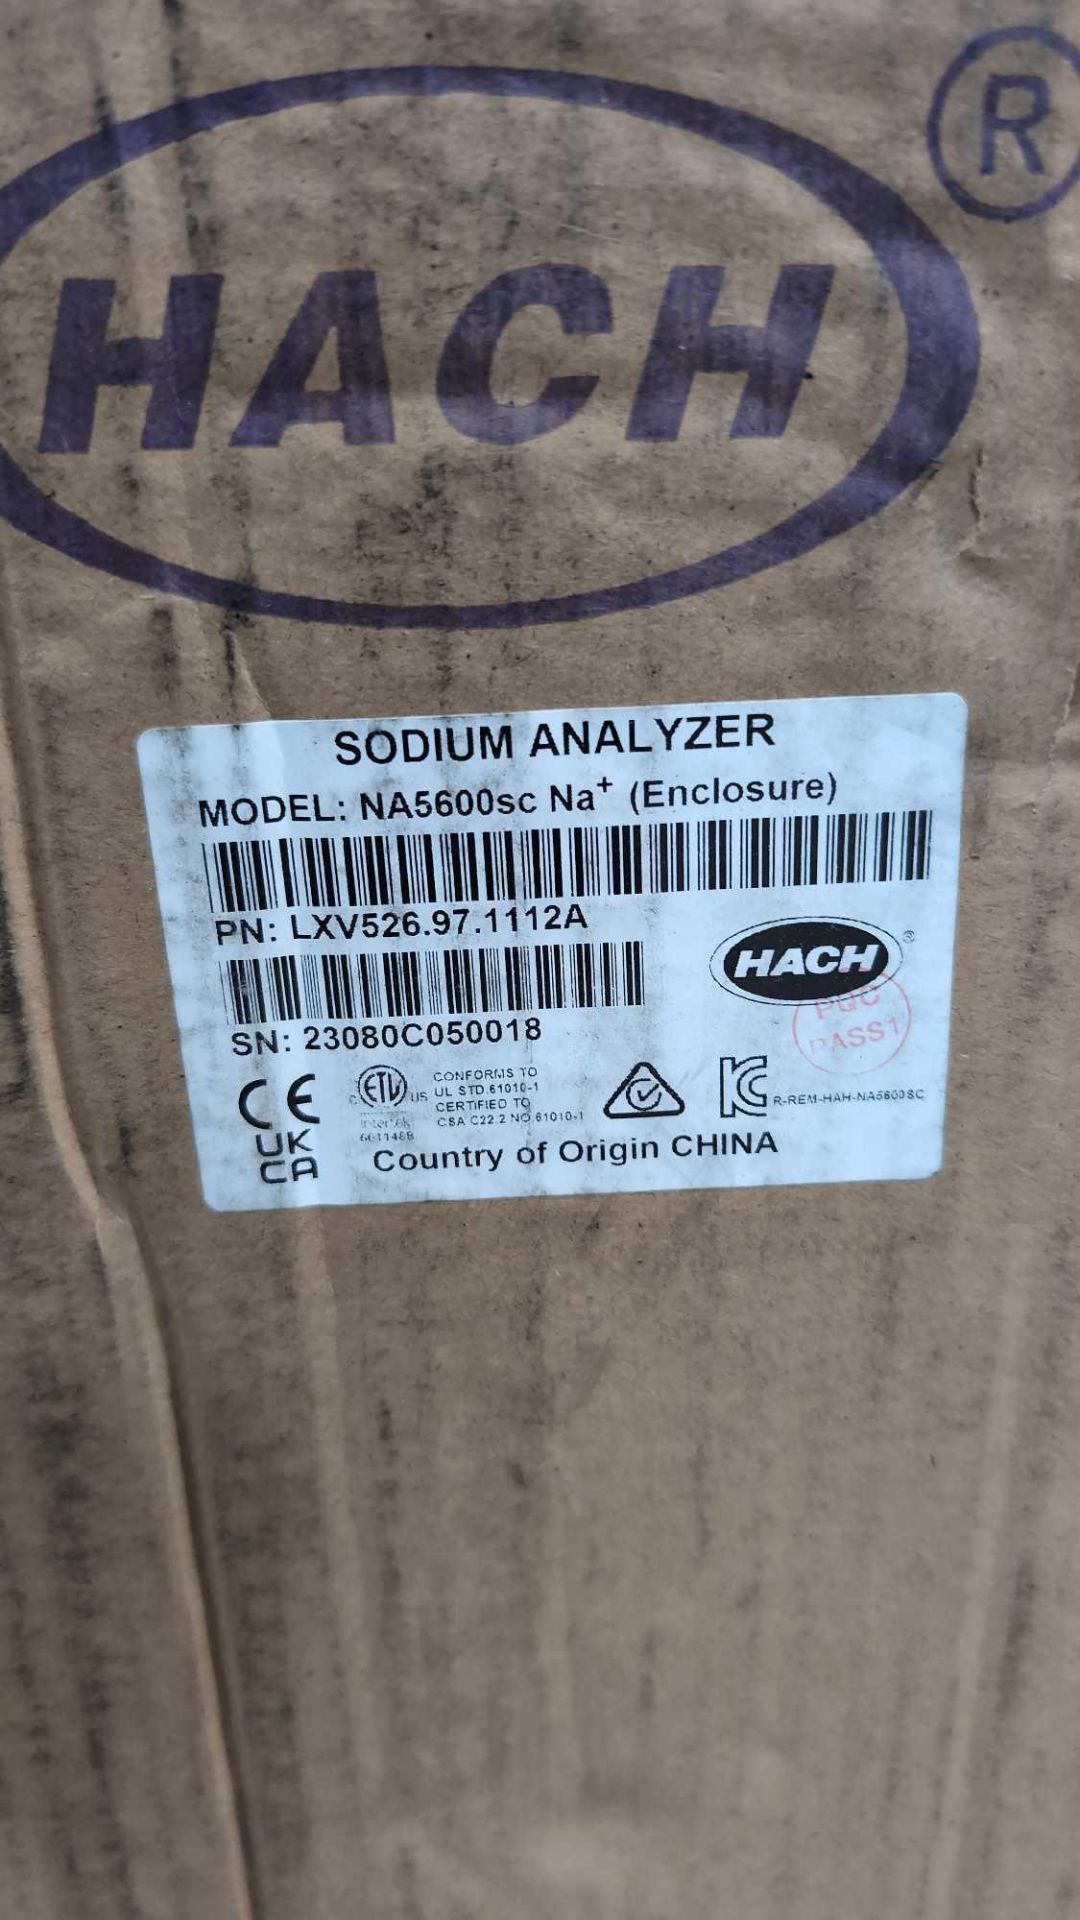 hach sodium analyzer NA5600 - Image 5 of 6